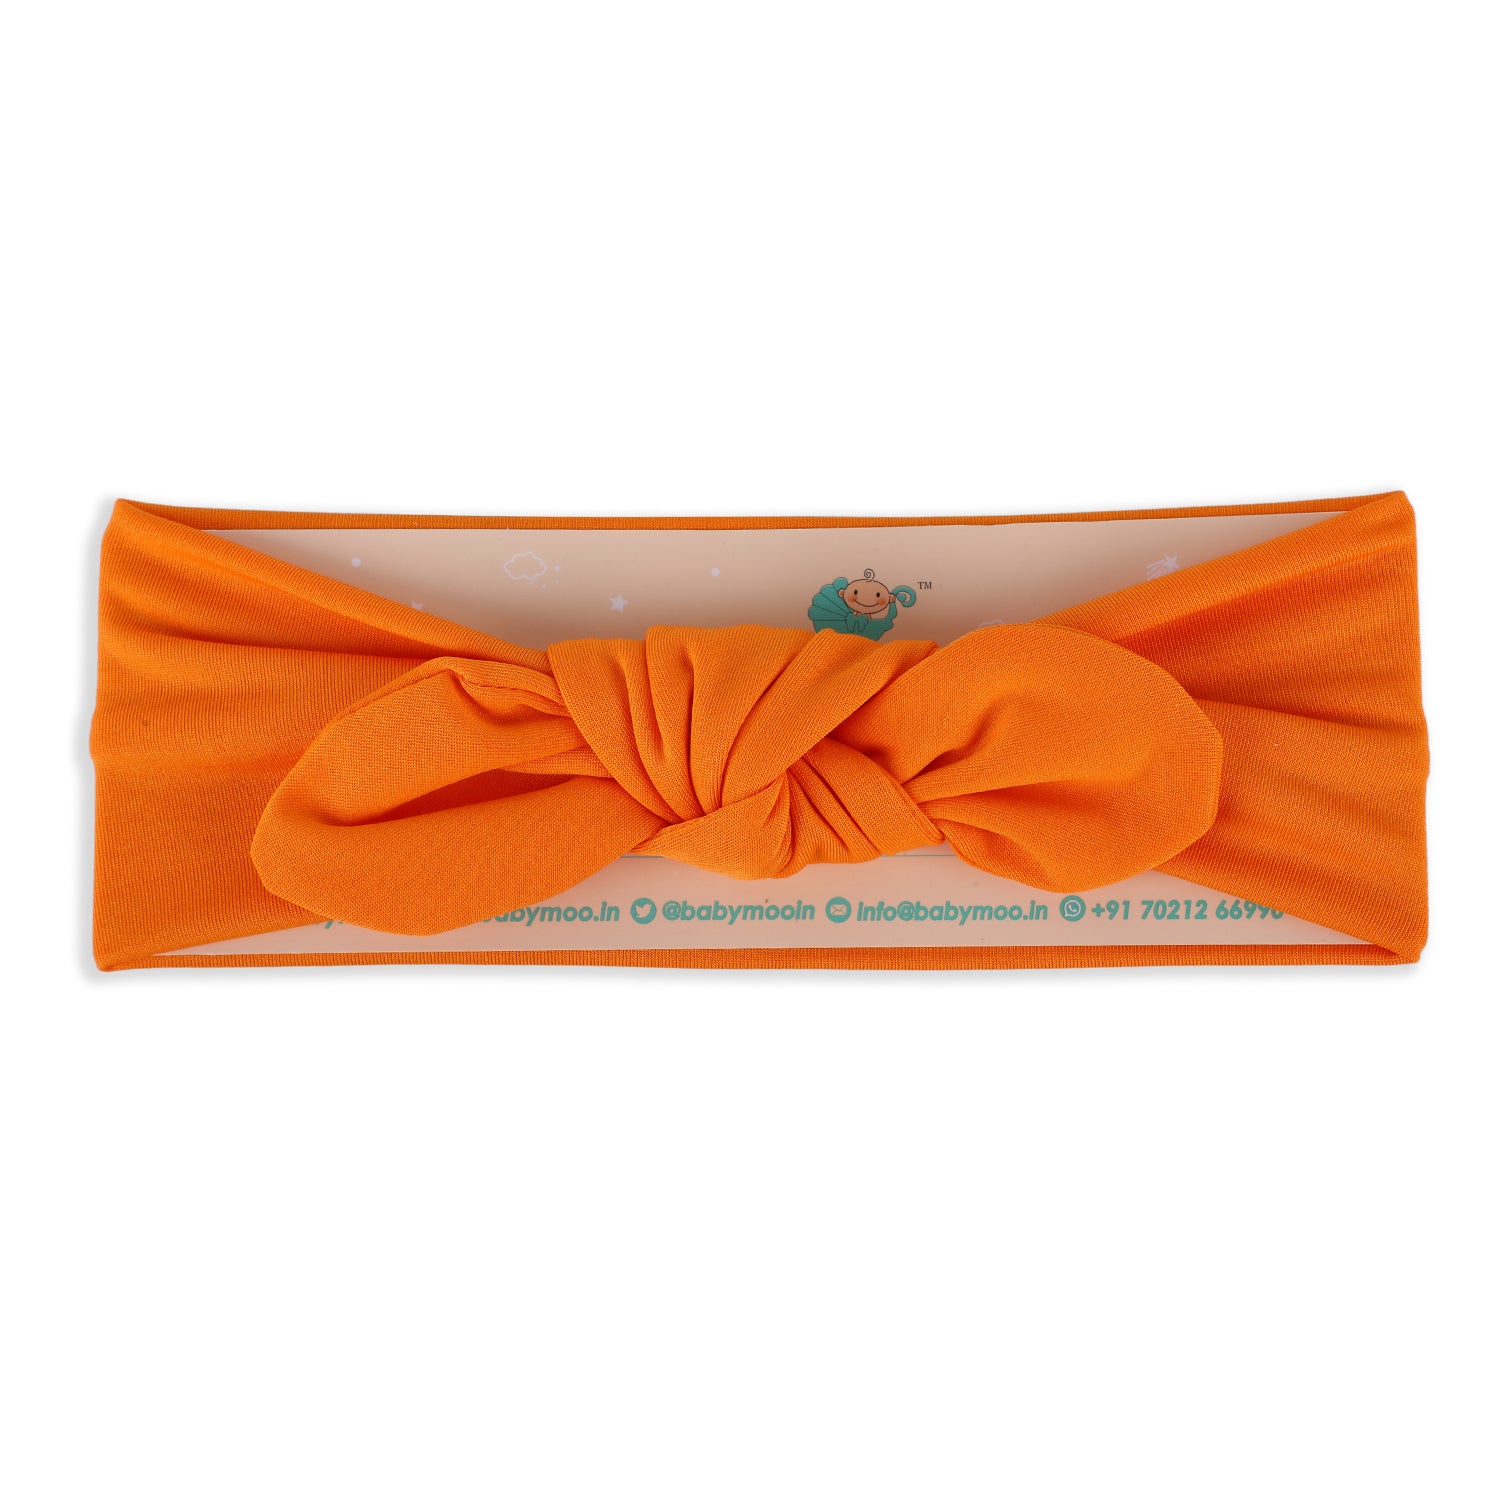 Bow Knot Headband - Orange - Baby Moo